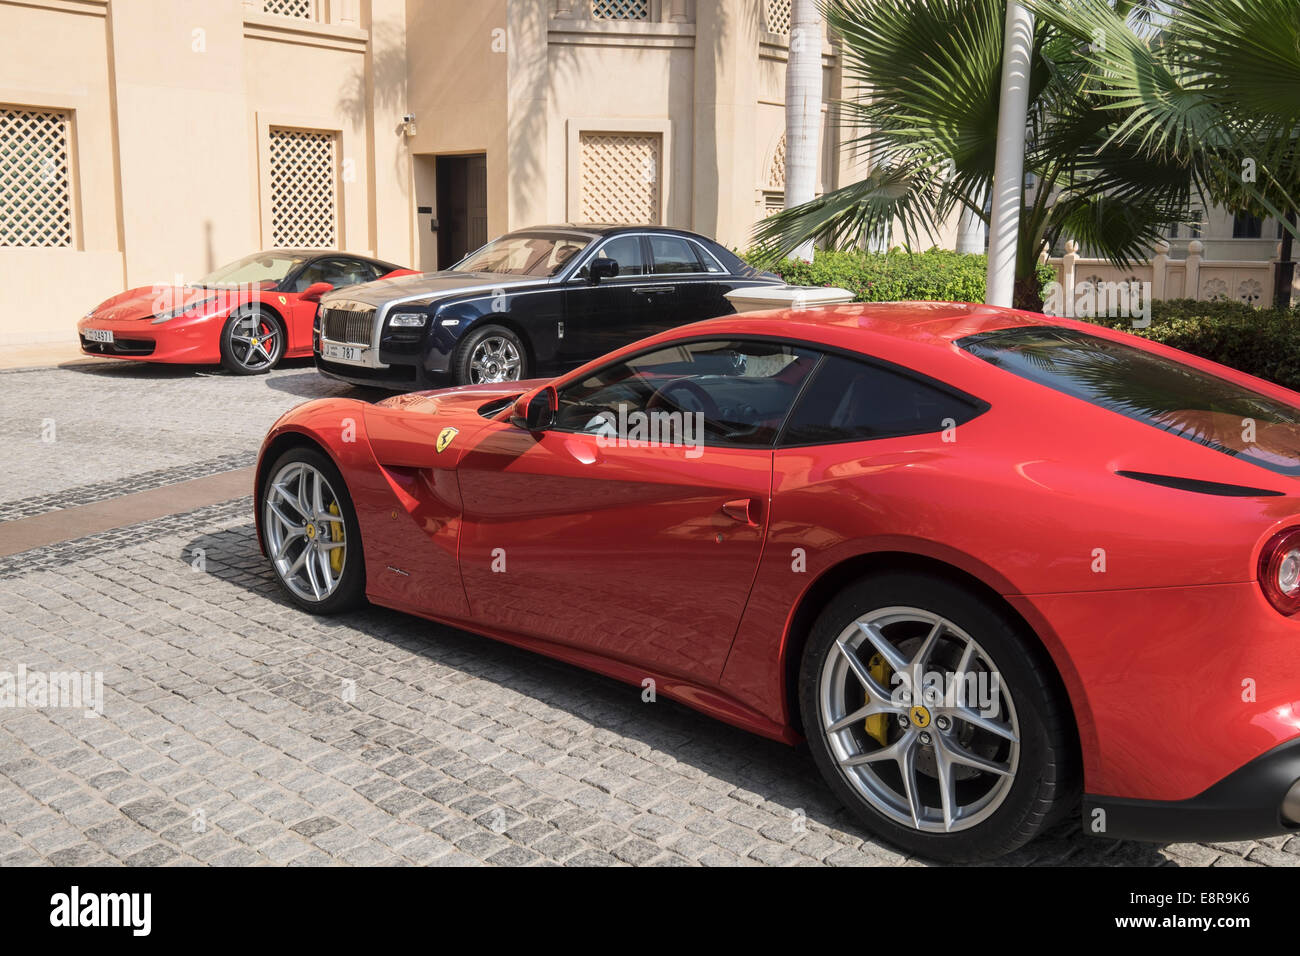 Les voitures de luxe garées devant hôtel 5 étoiles à Dubaï Émirats Arabes Unis Banque D'Images